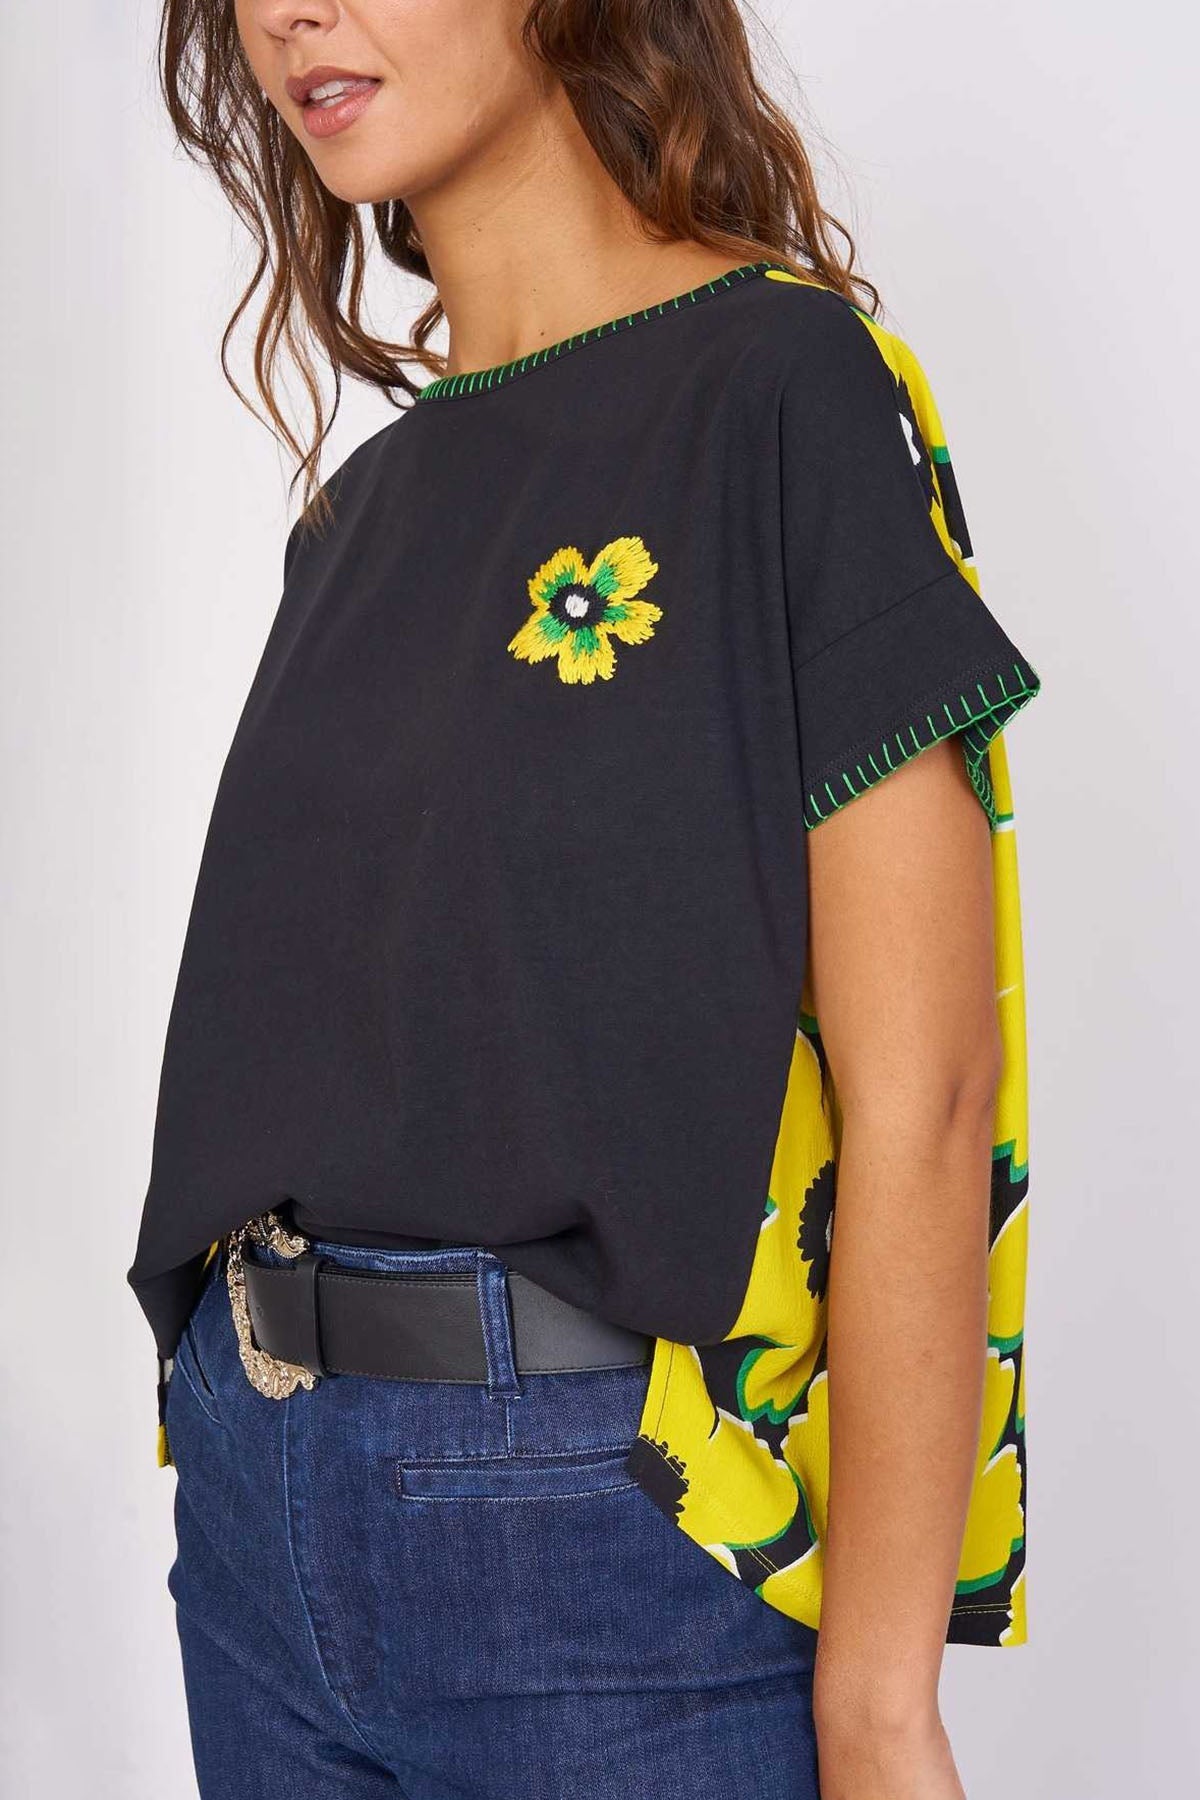 Rene Derhy Lorelei Çiçek Desenli T-shirt